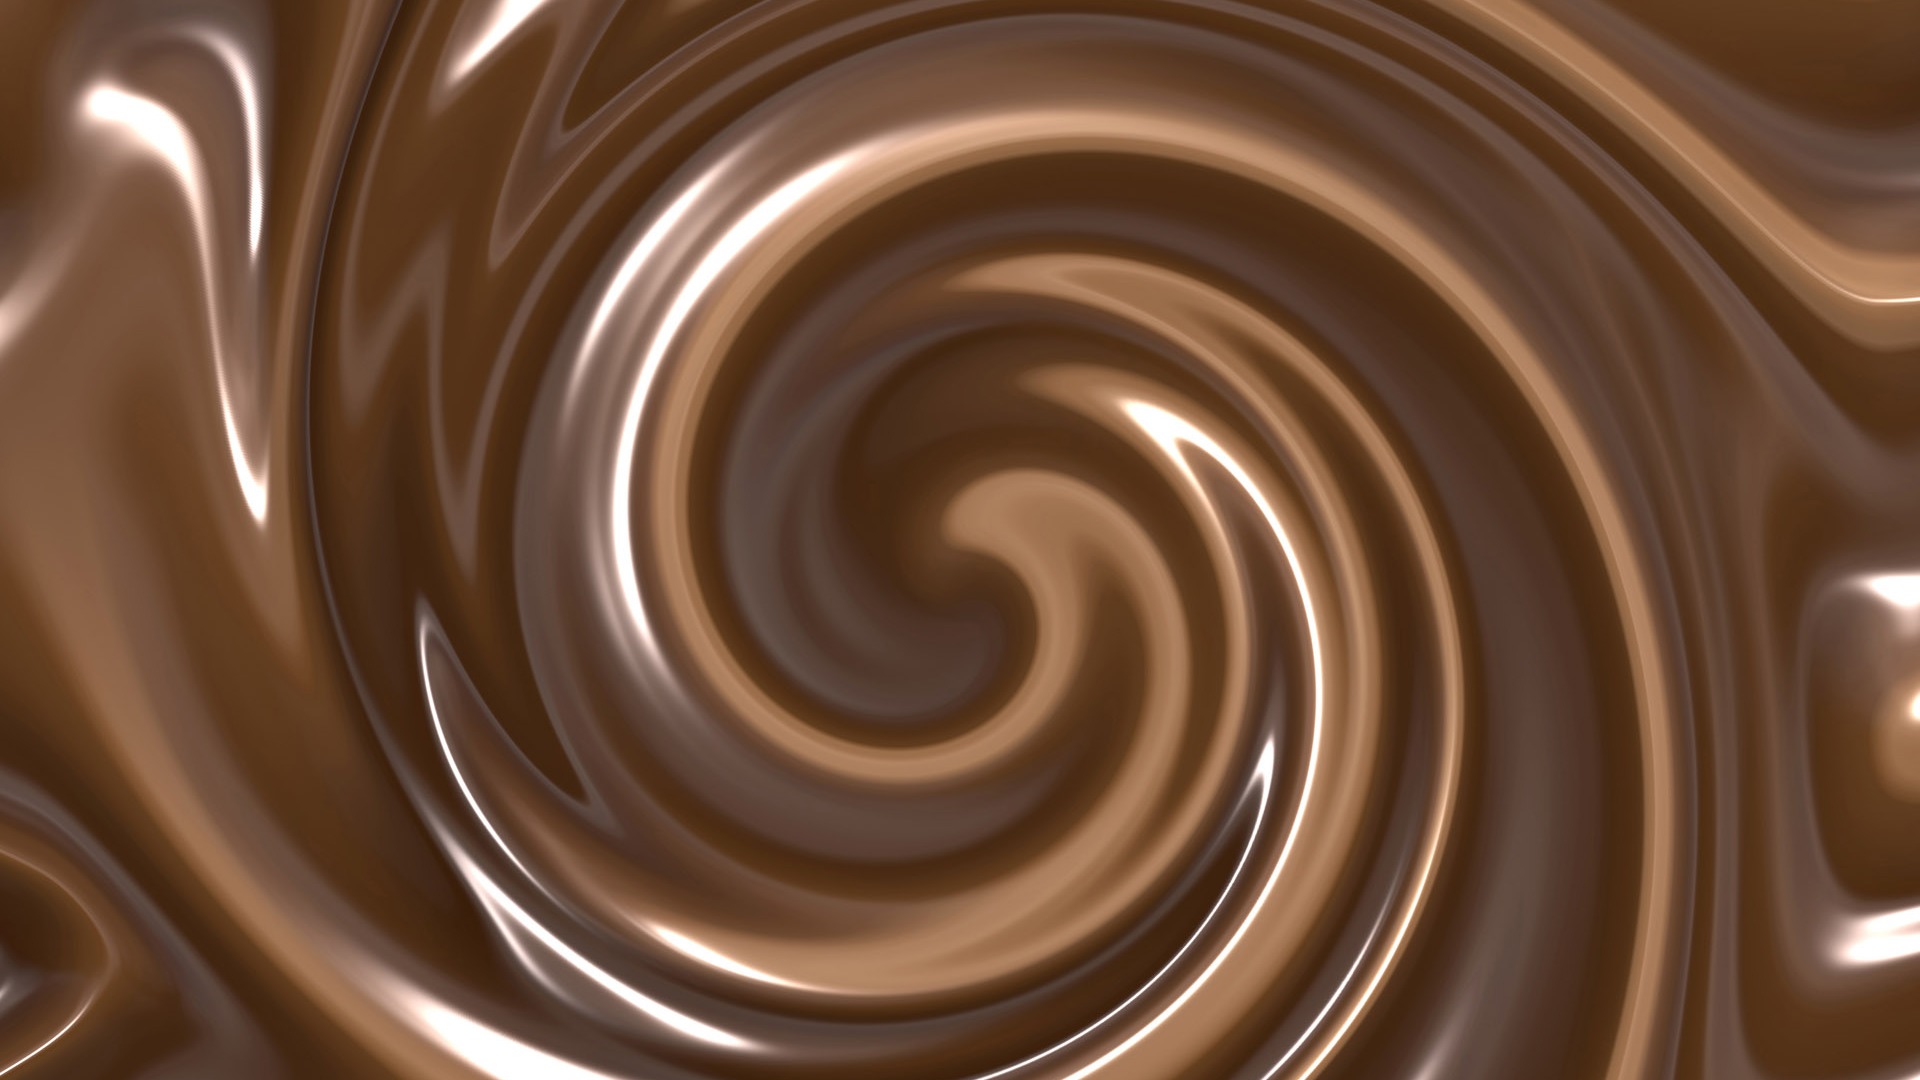 Chocolate plano de fondo (2) #5 - 1920x1080